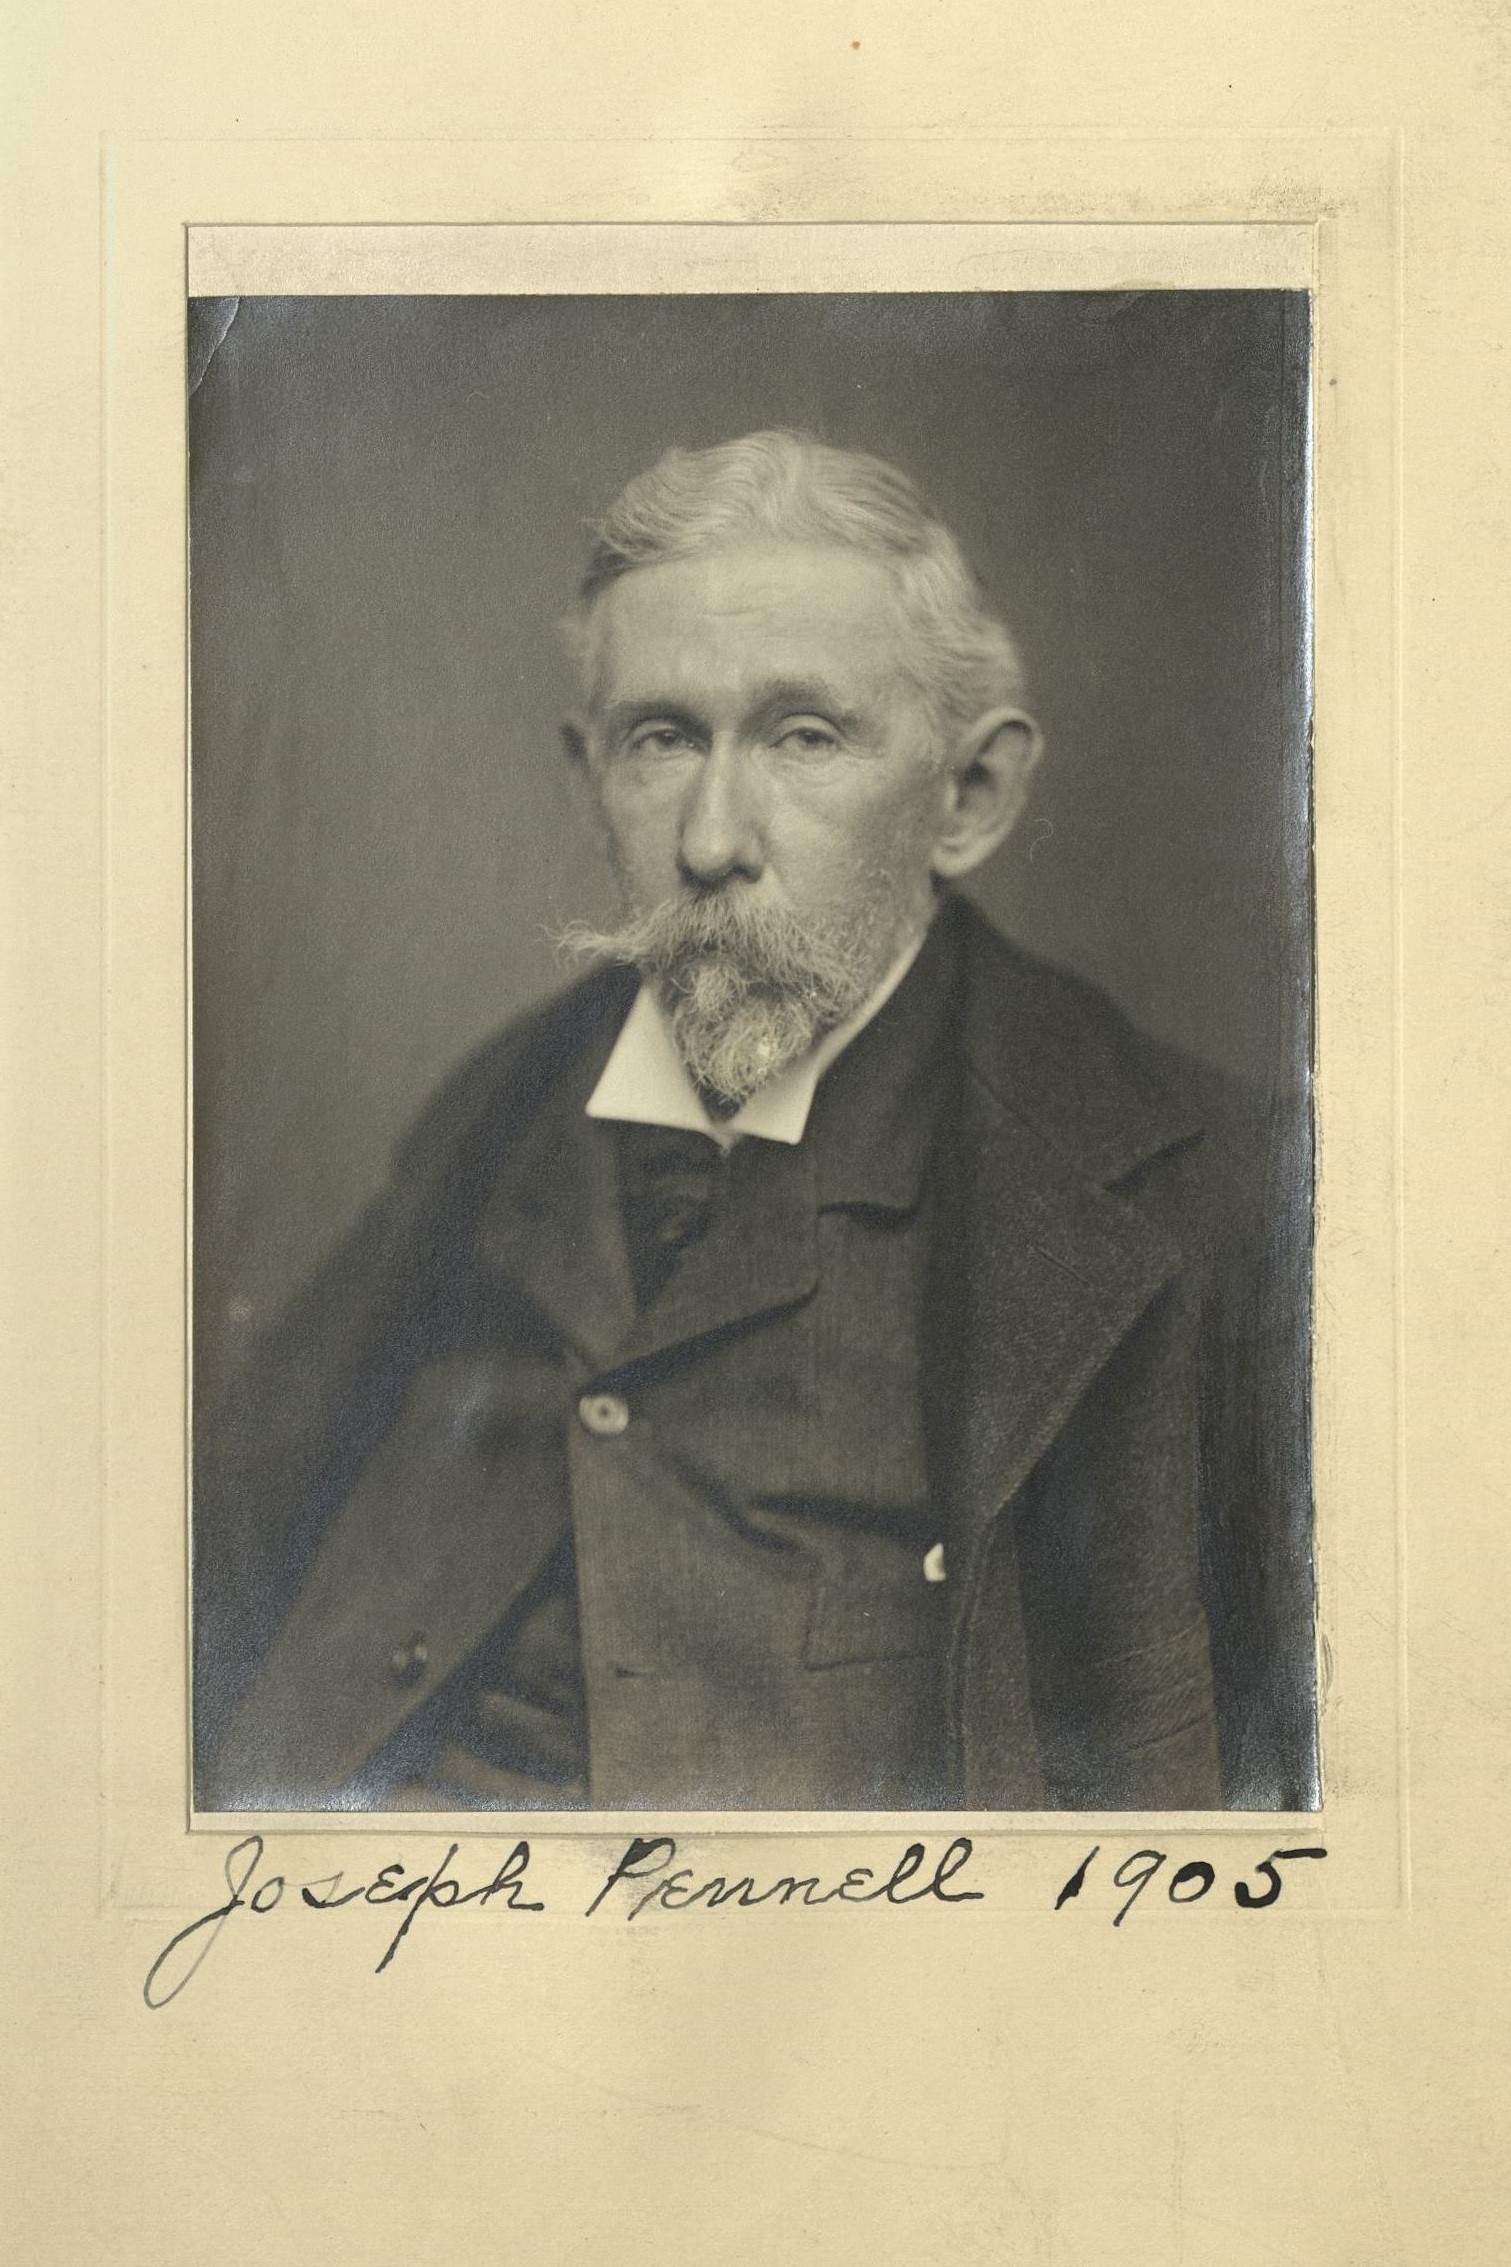 Member portrait of Joseph Pennell